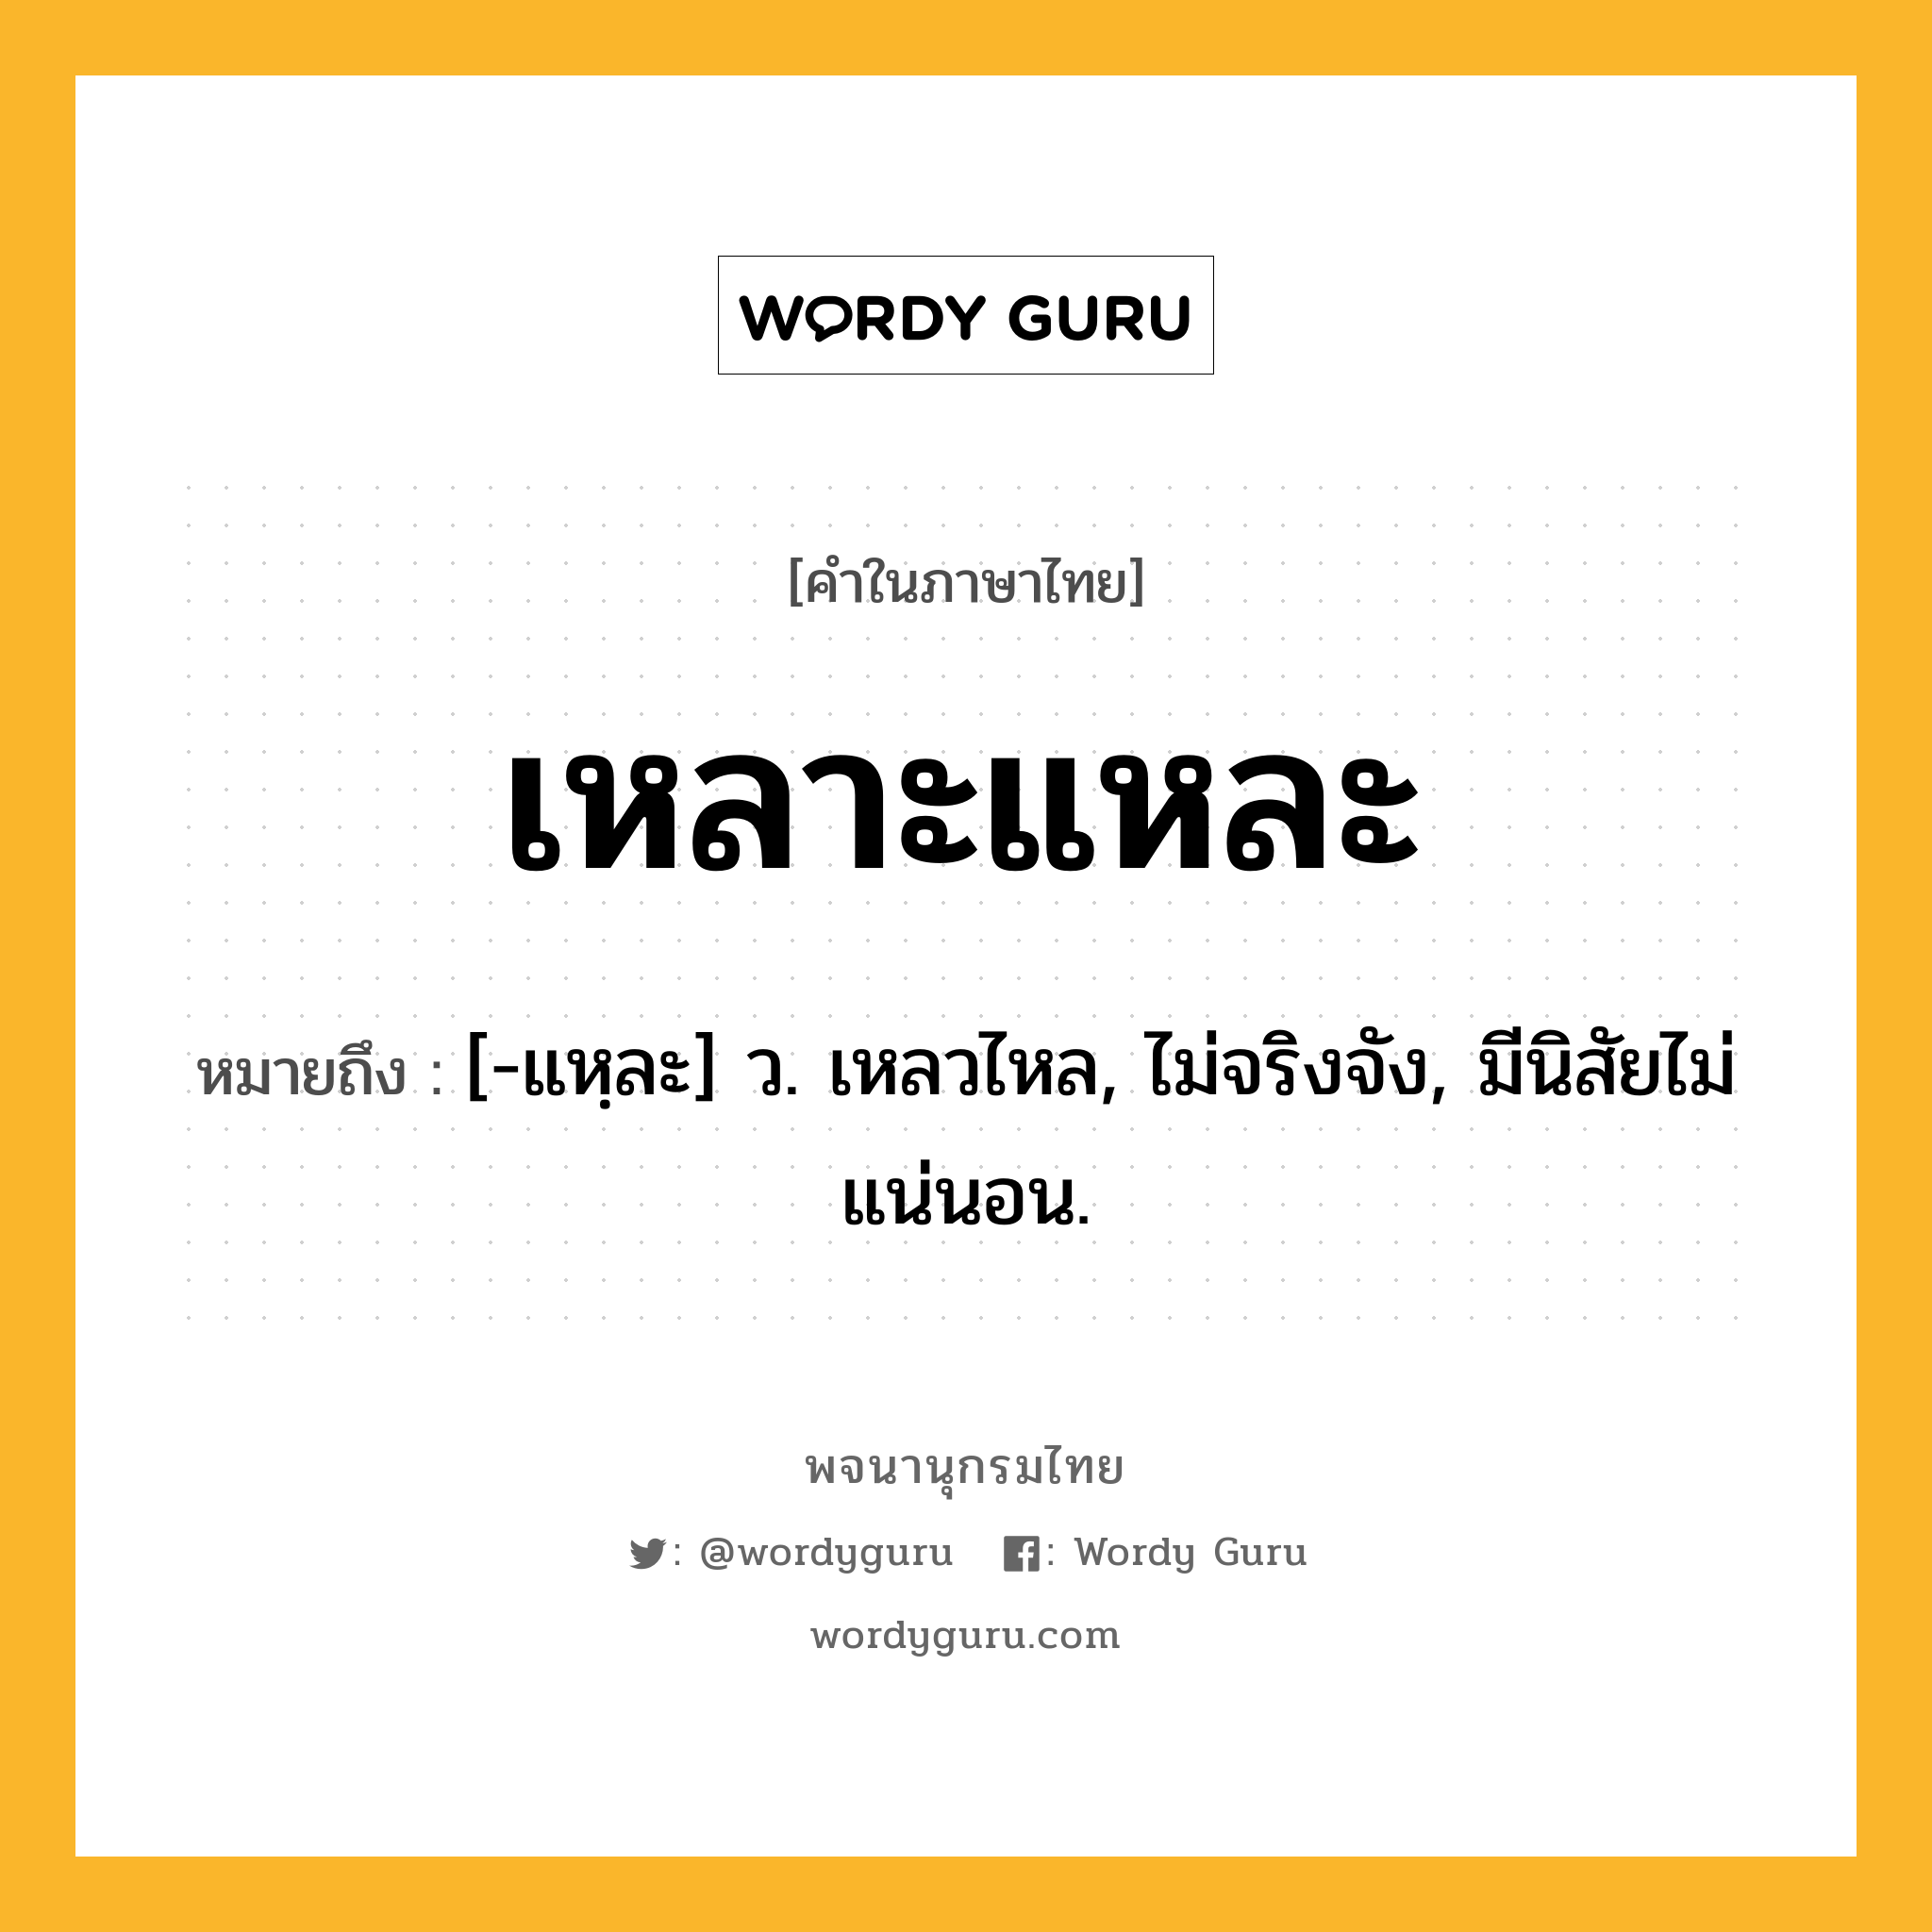 เหลาะแหละ ความหมาย หมายถึงอะไร?, คำในภาษาไทย เหลาะแหละ หมายถึง [-แหฺละ] ว. เหลวไหล, ไม่จริงจัง, มีนิสัยไม่แน่นอน.